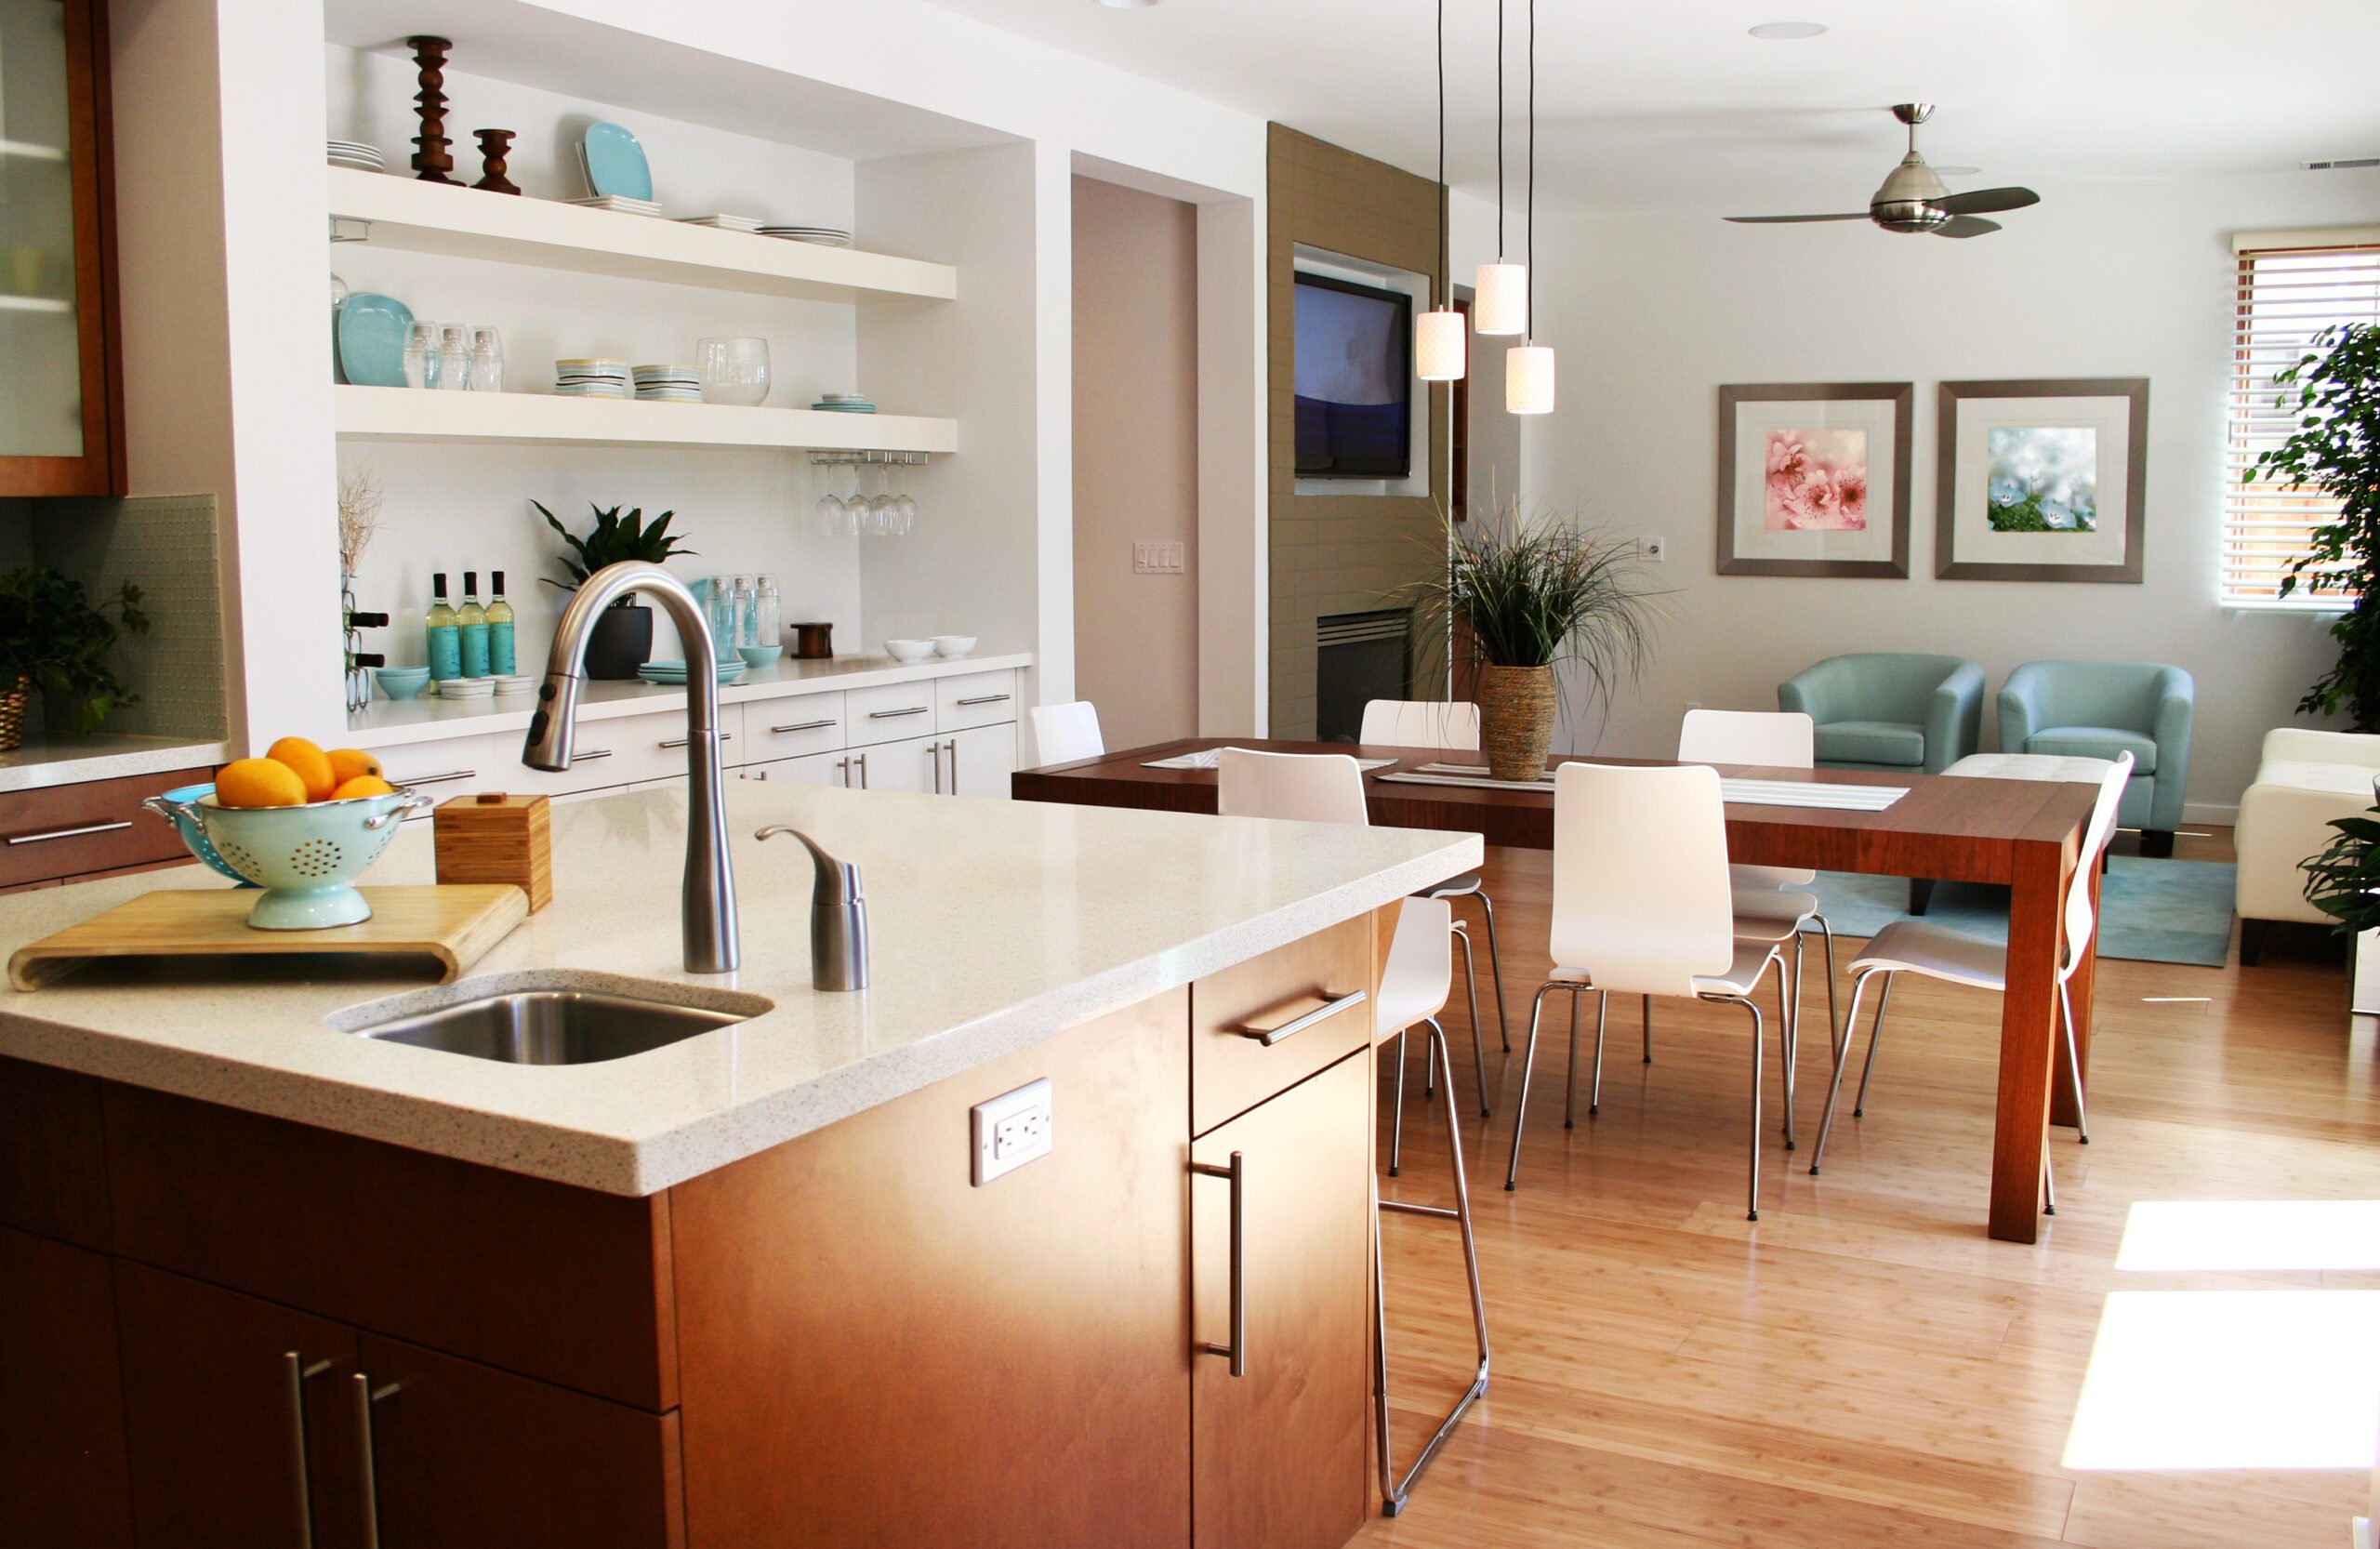 Cozy kitchen with luxury vinyl plank floors